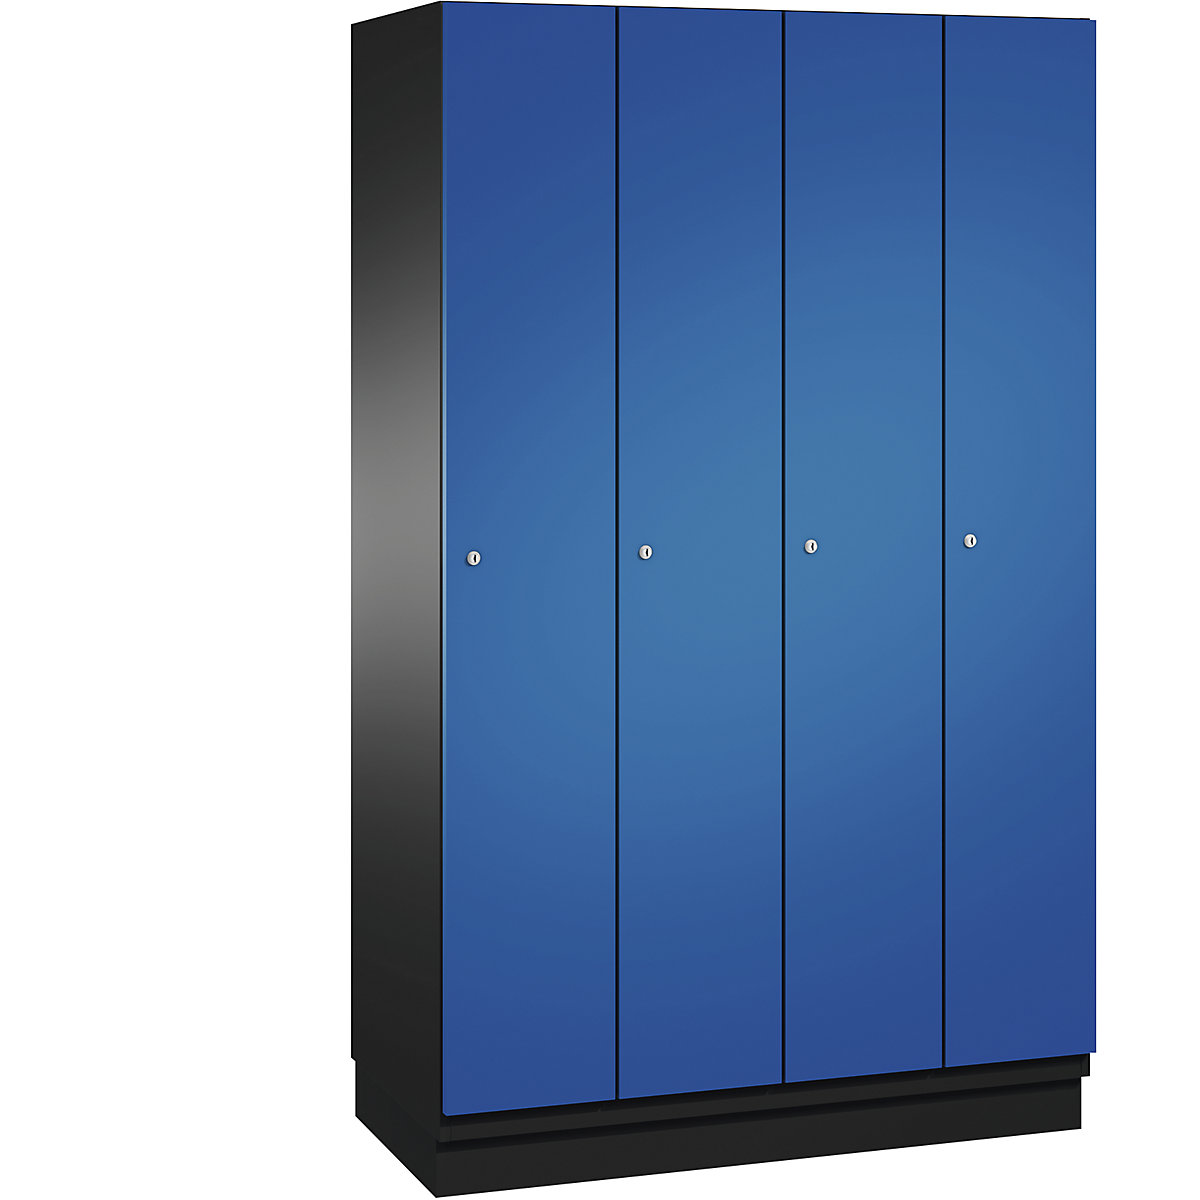 CAMBIO cloakroom locker with sheet steel doors – C+P, 4 compartments, 1200 mm wide, body black grey / door gentian blue-10